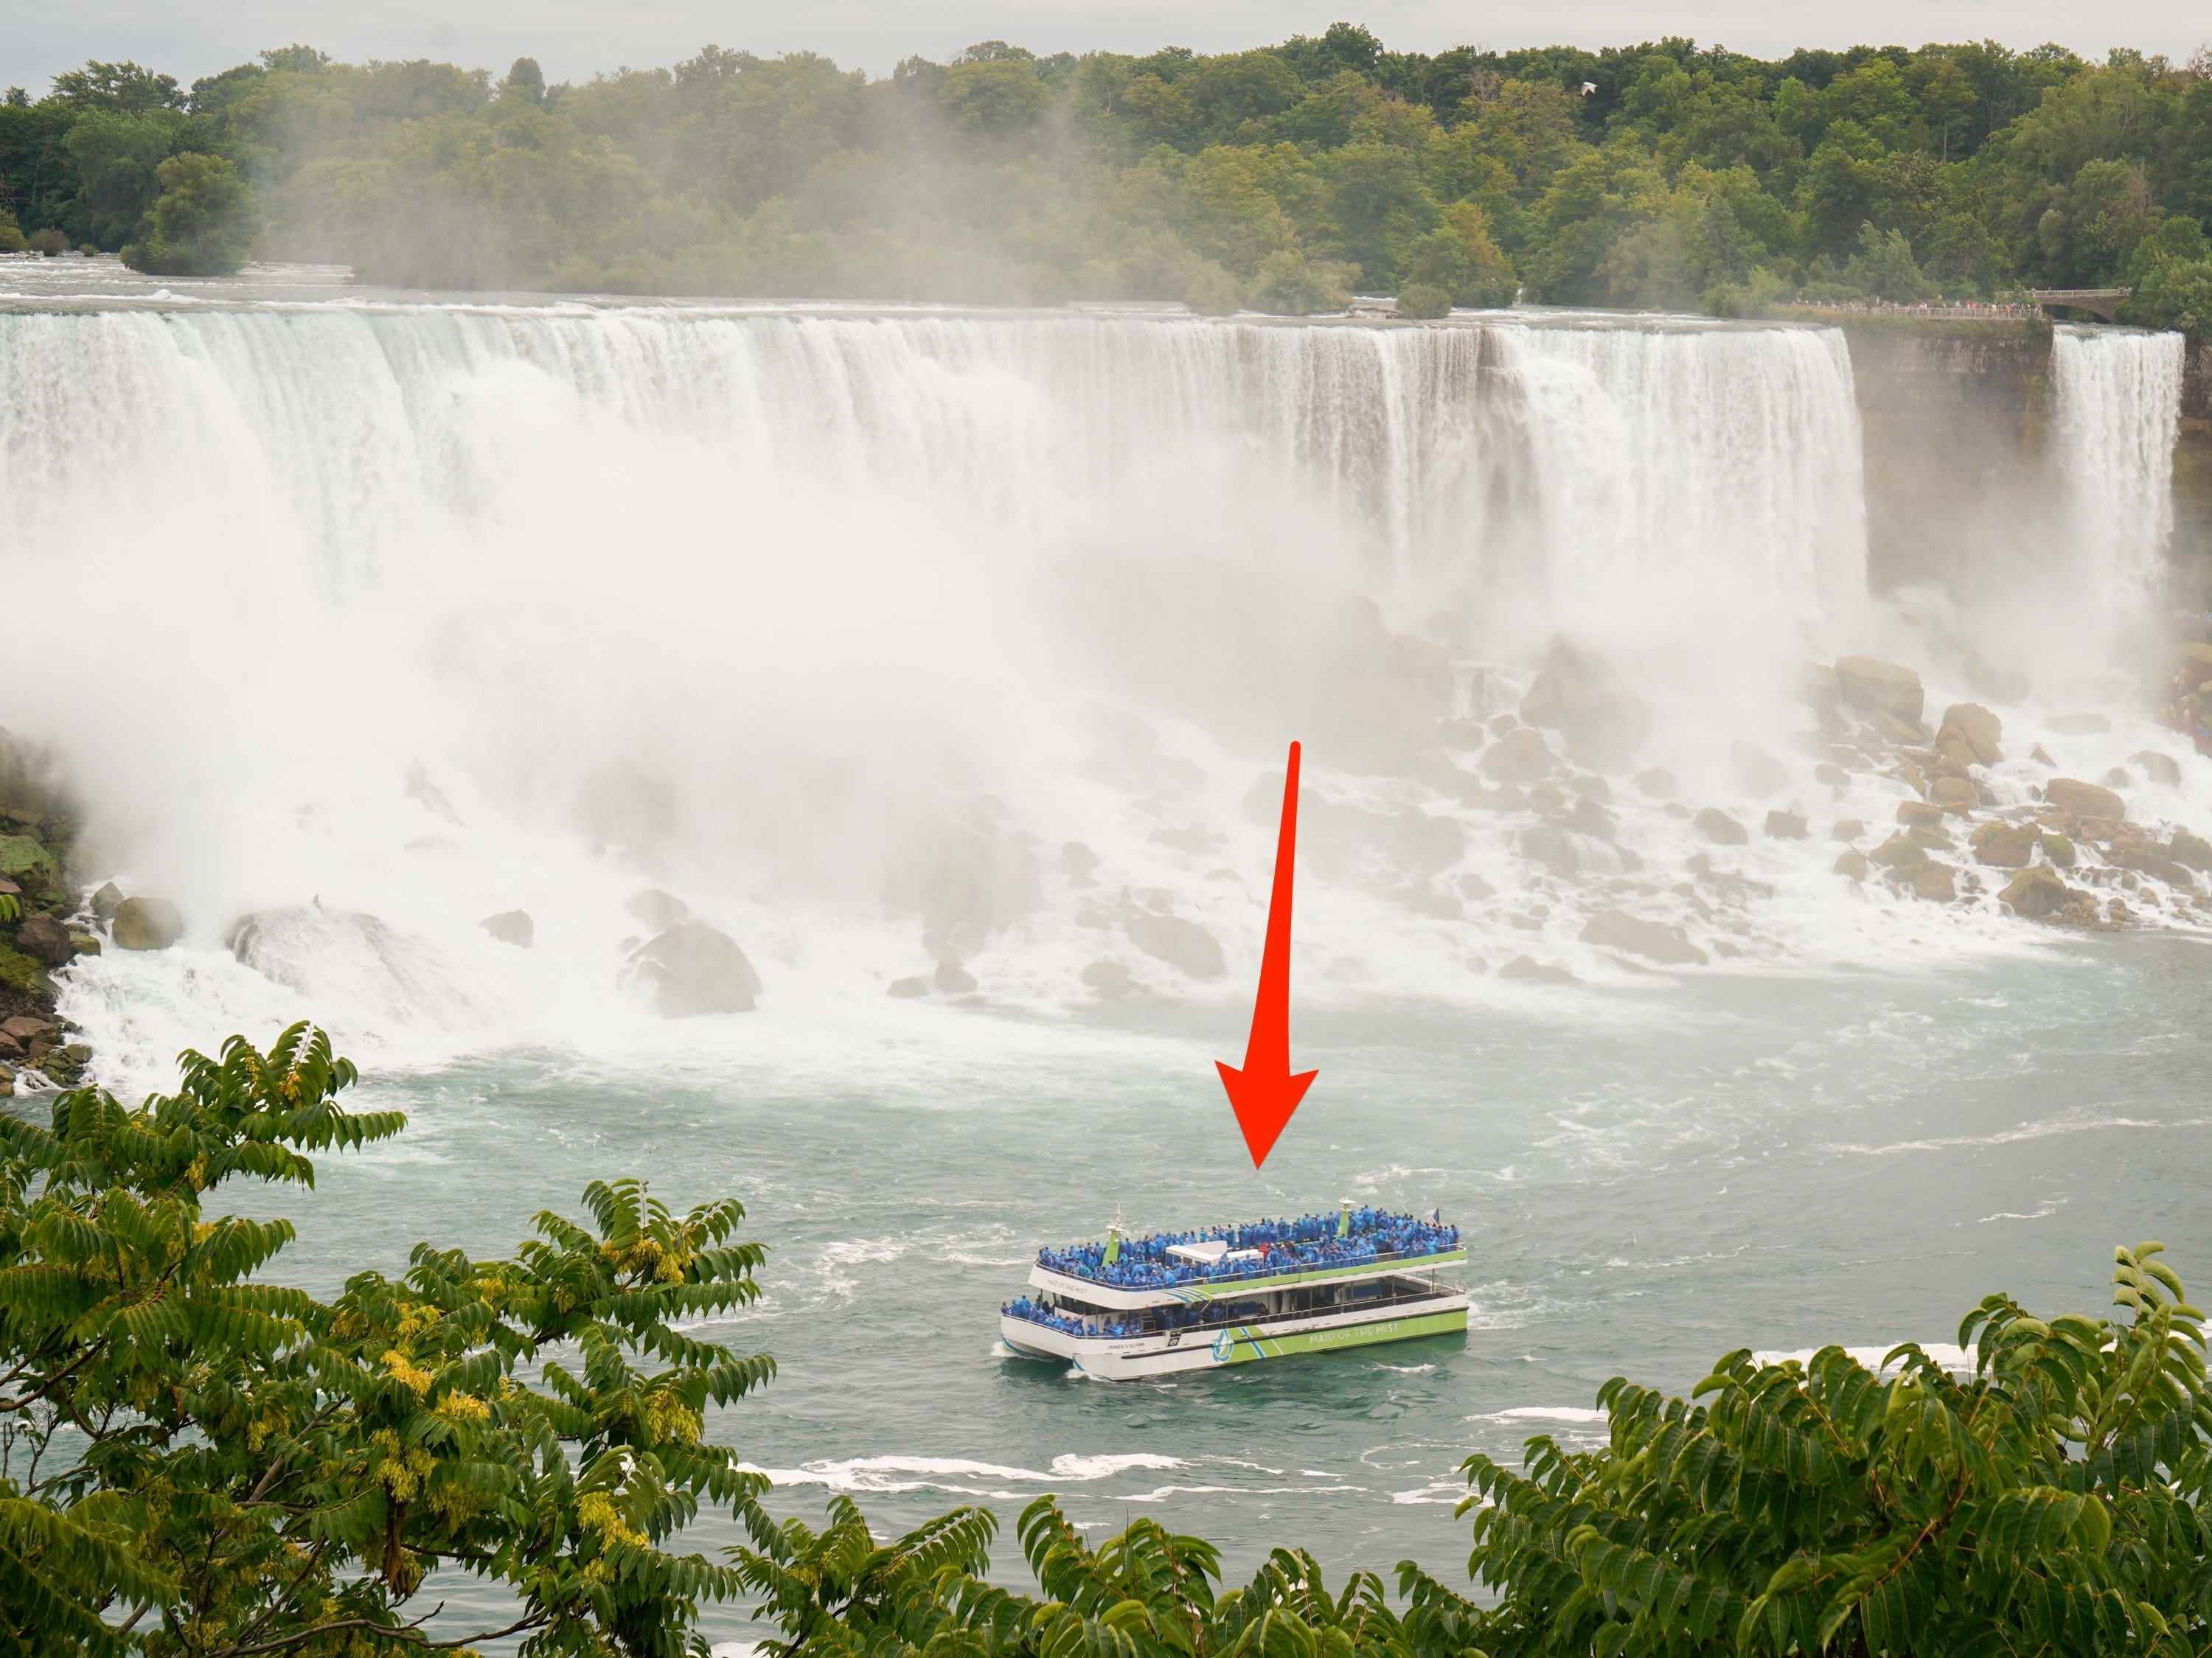 Niagarafälle vom Boot Maid of Mist aus gesehen